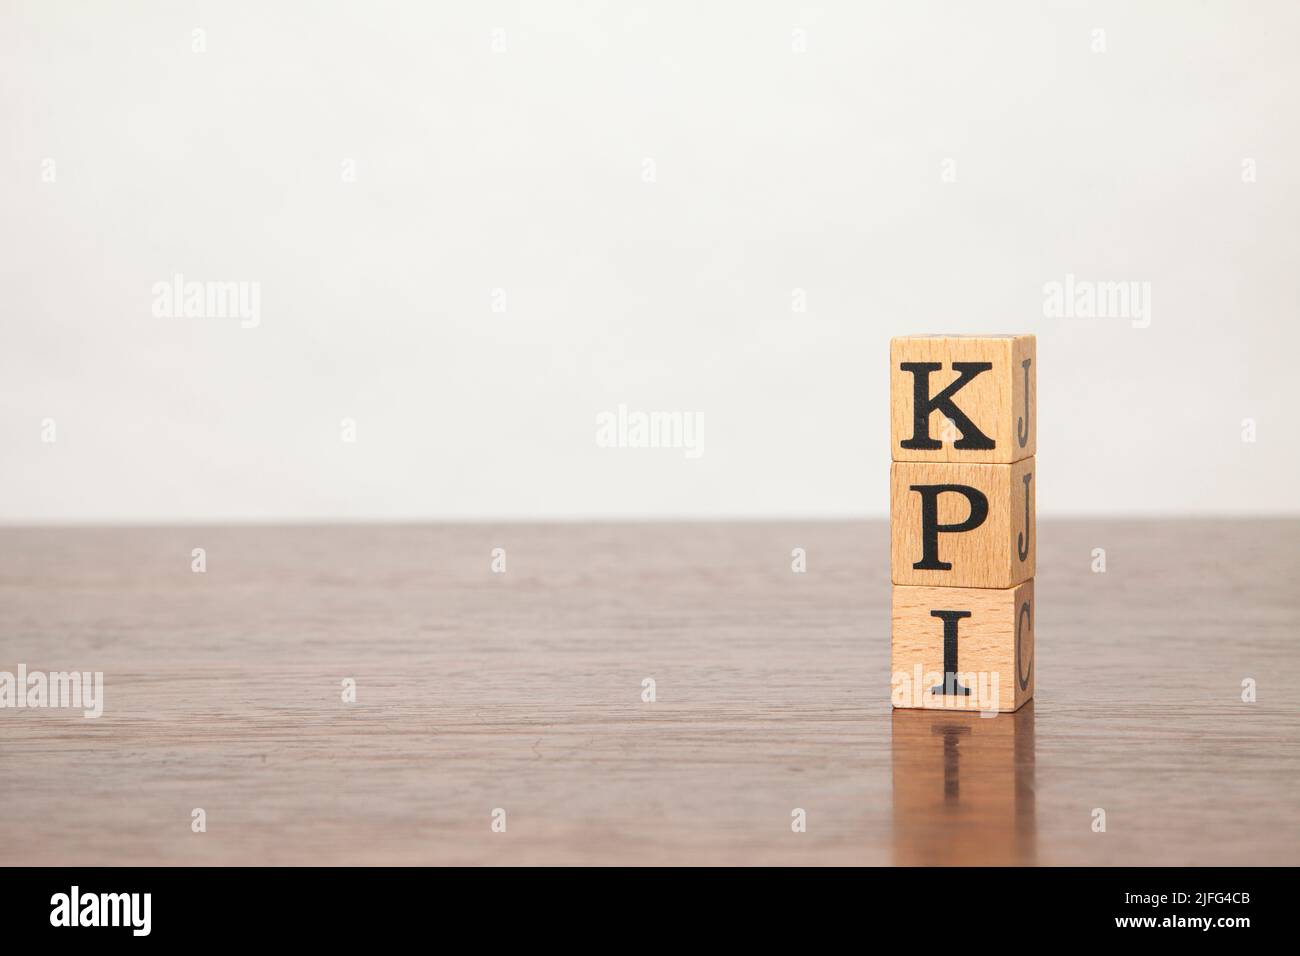 KPI-Buchstaben in schwarzen Buchstaben auf einem Holzblock geschrieben. Key Performance Indicator. Geschrieben auf drei Blöcken auf einem Holztisch gestapelt. Platz auf t kopieren Stockfoto